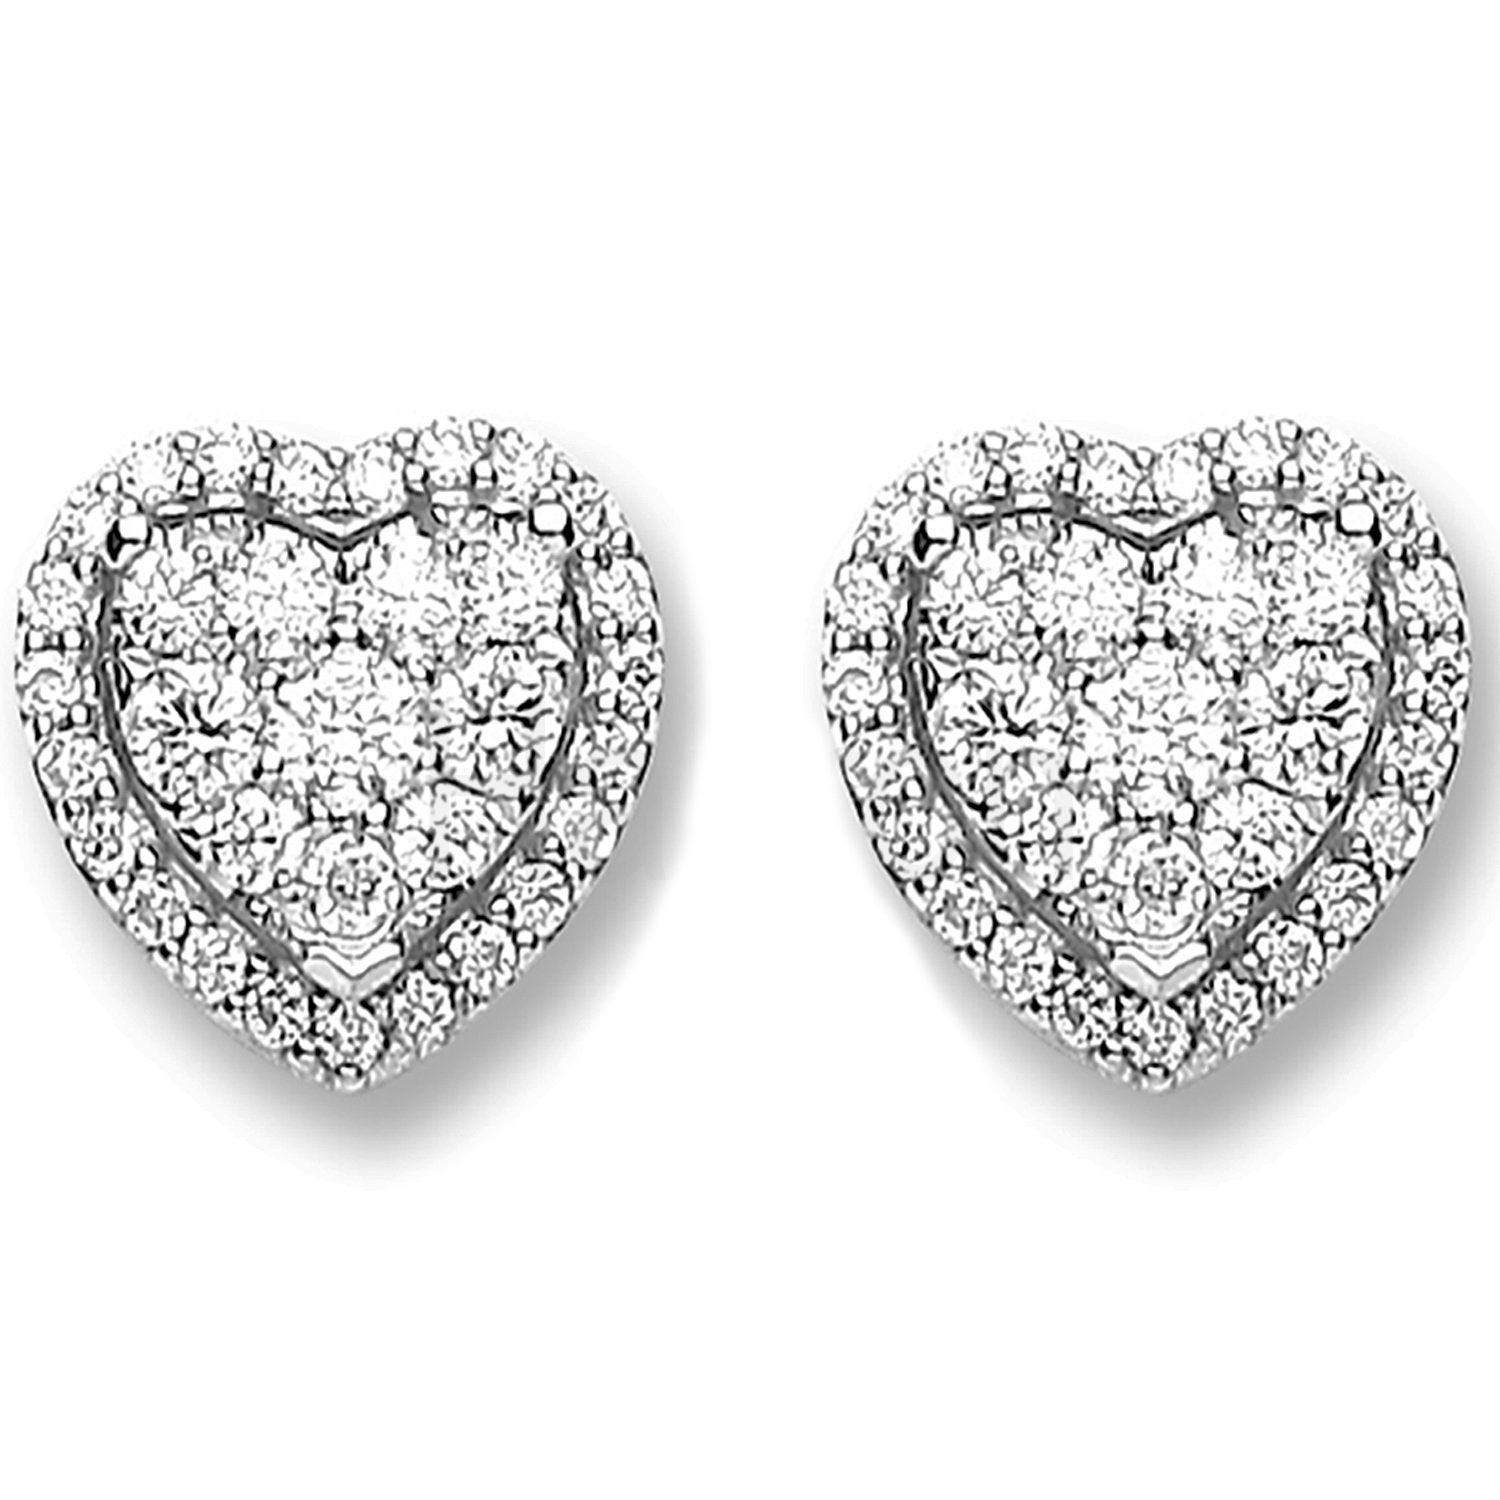 Pendientes con forma de corazón y diamantes de 0,45 ct en oro blanco de 18 quilates